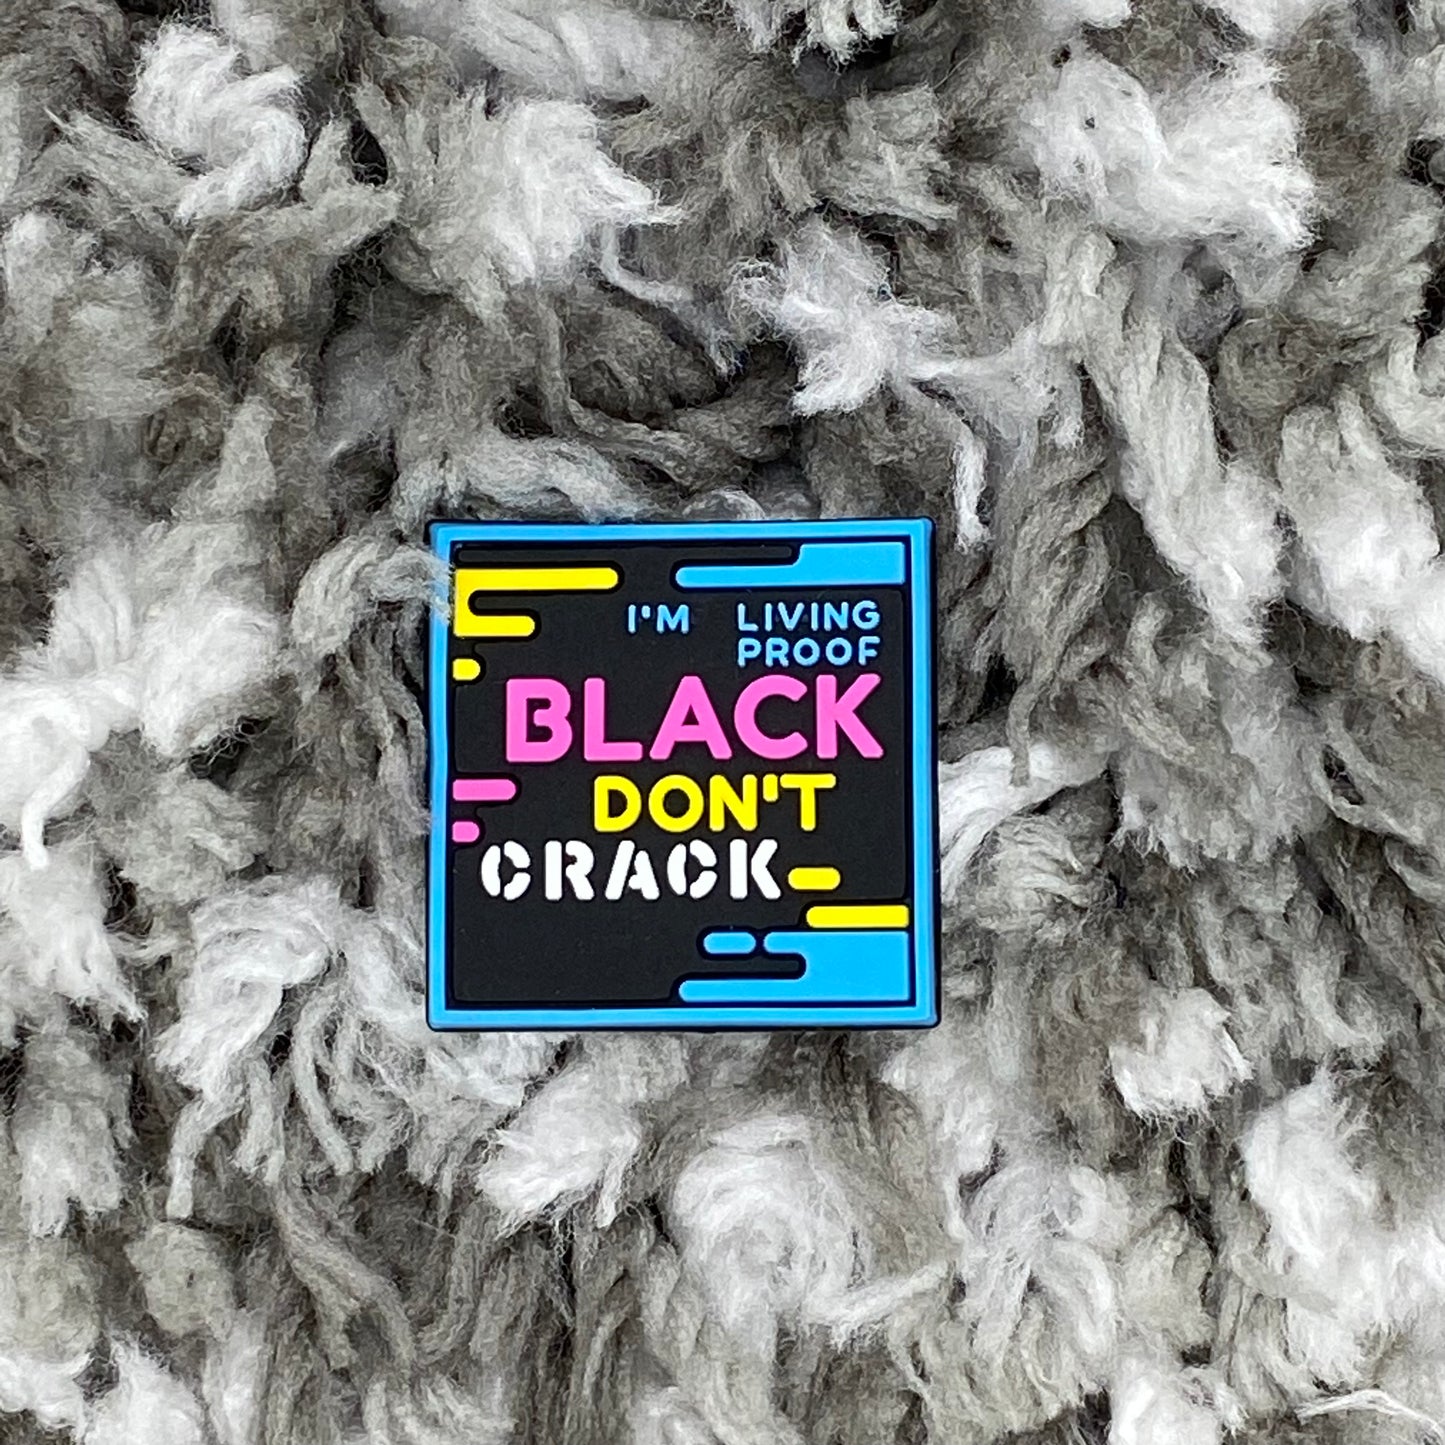 Black don’t crack